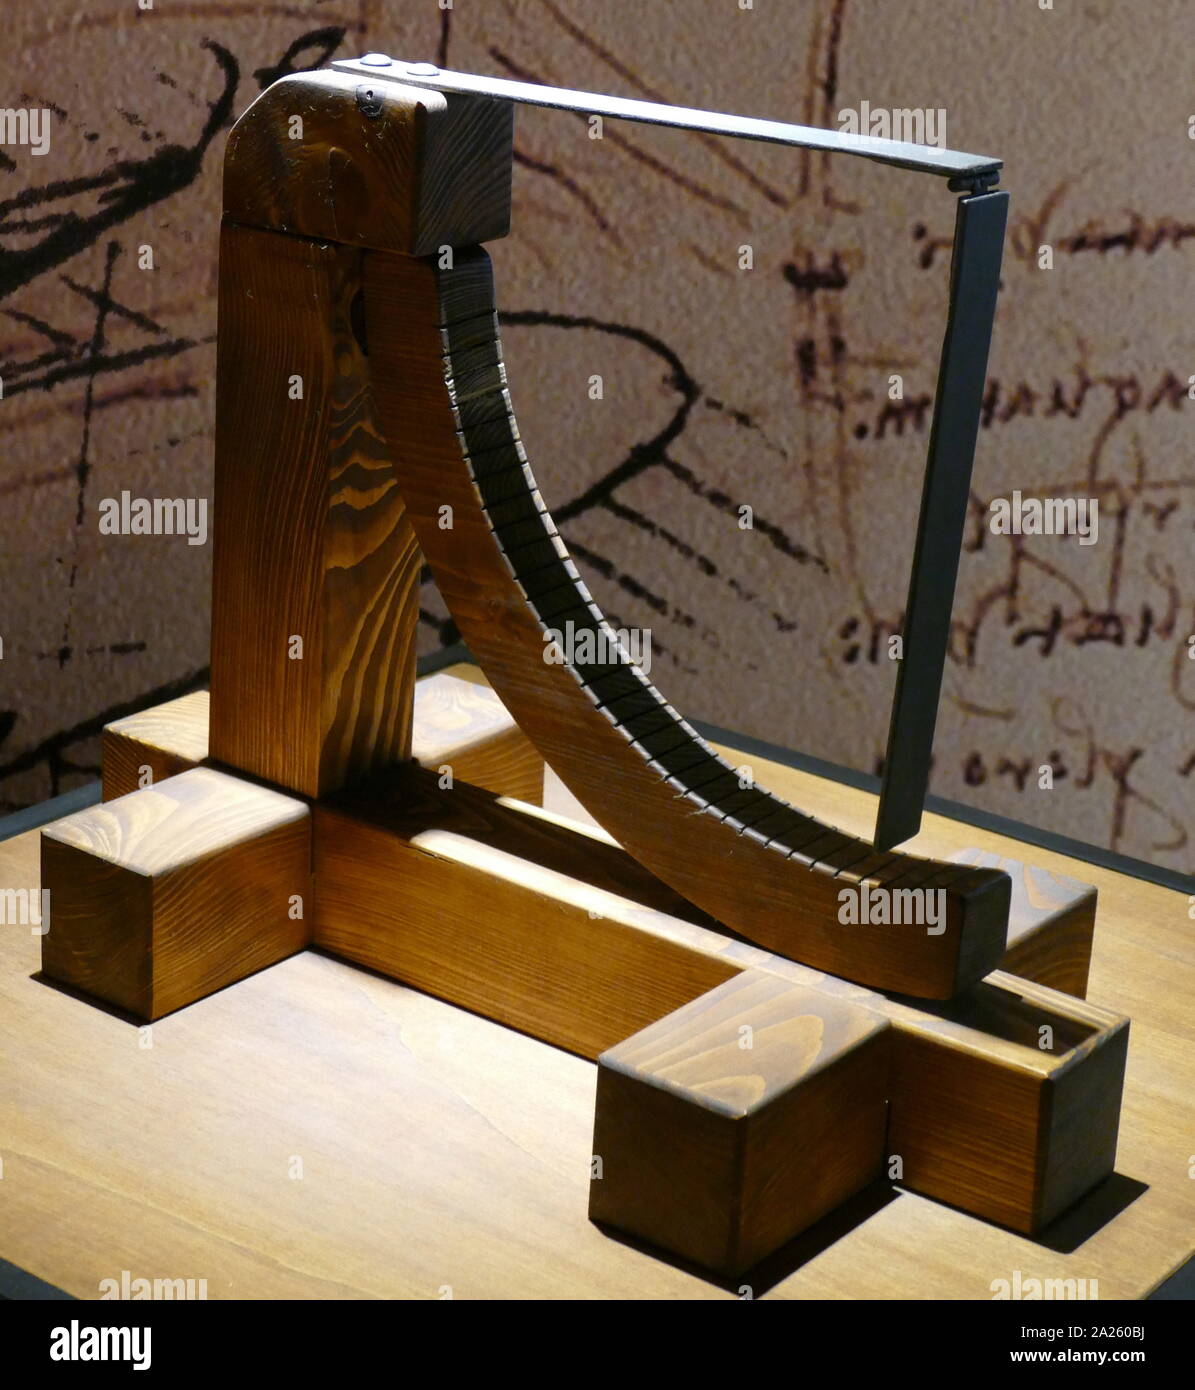 Modèle d'un anémomètre, utilisé pour identifier la vitesse du vent ; basé sur un dessin de Léonard de Vinci (1452-1519), l'artiste italien et polymathe ; Codex Arundel folio 249 v. Banque D'Images